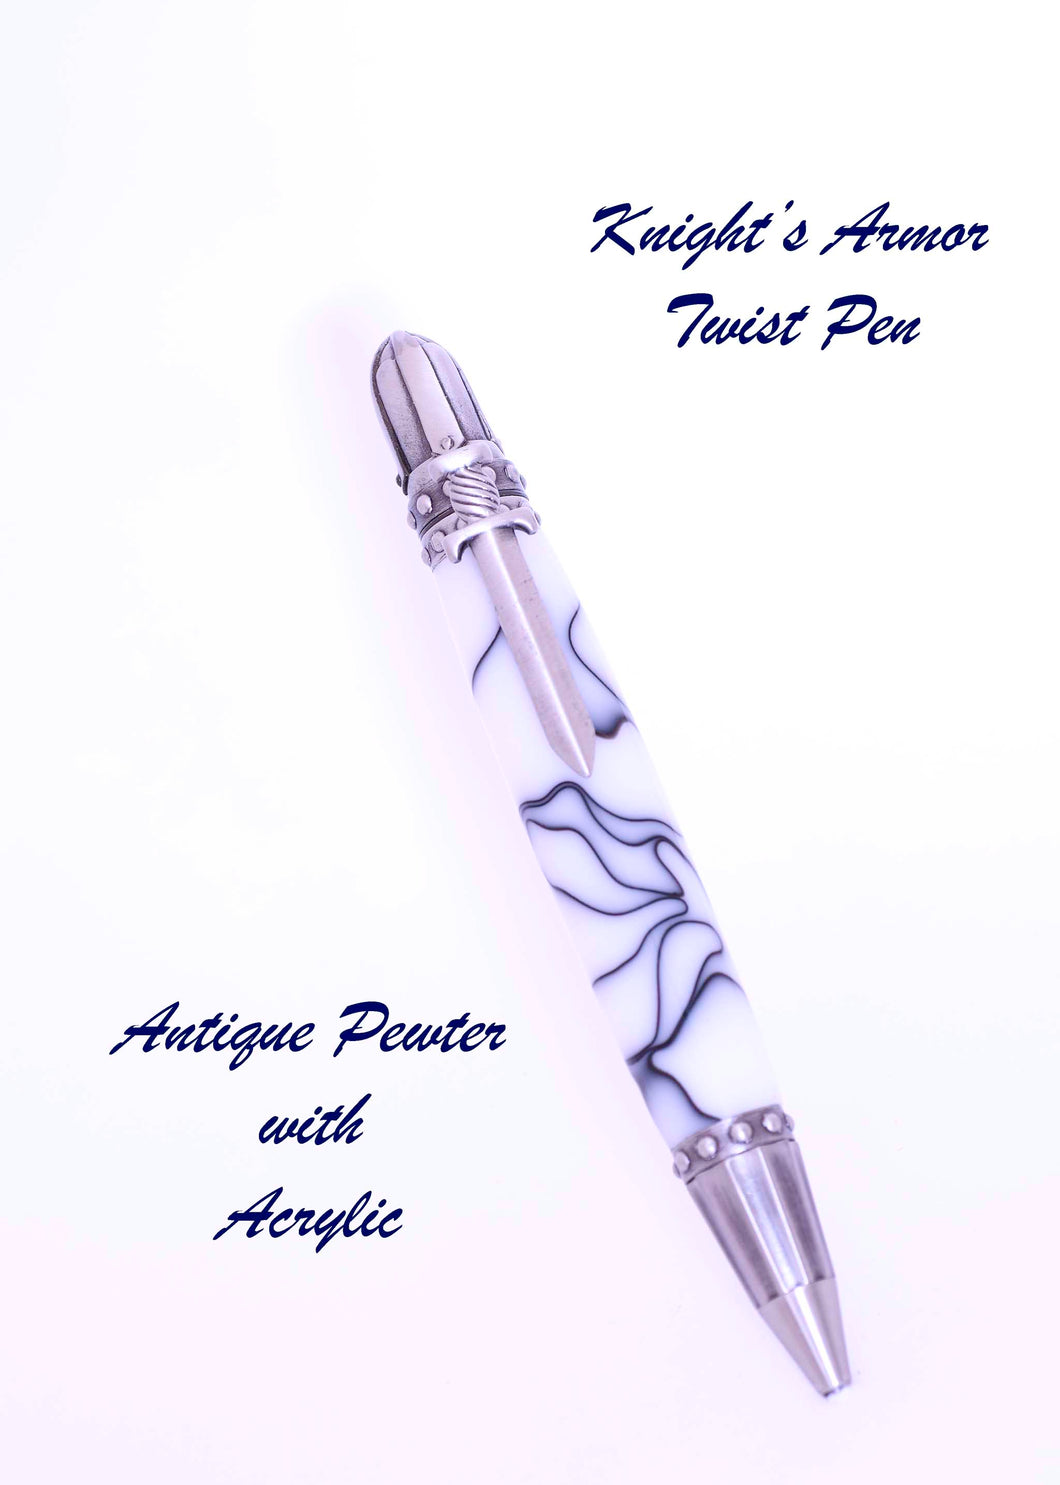 Knights Armor Twist Pen